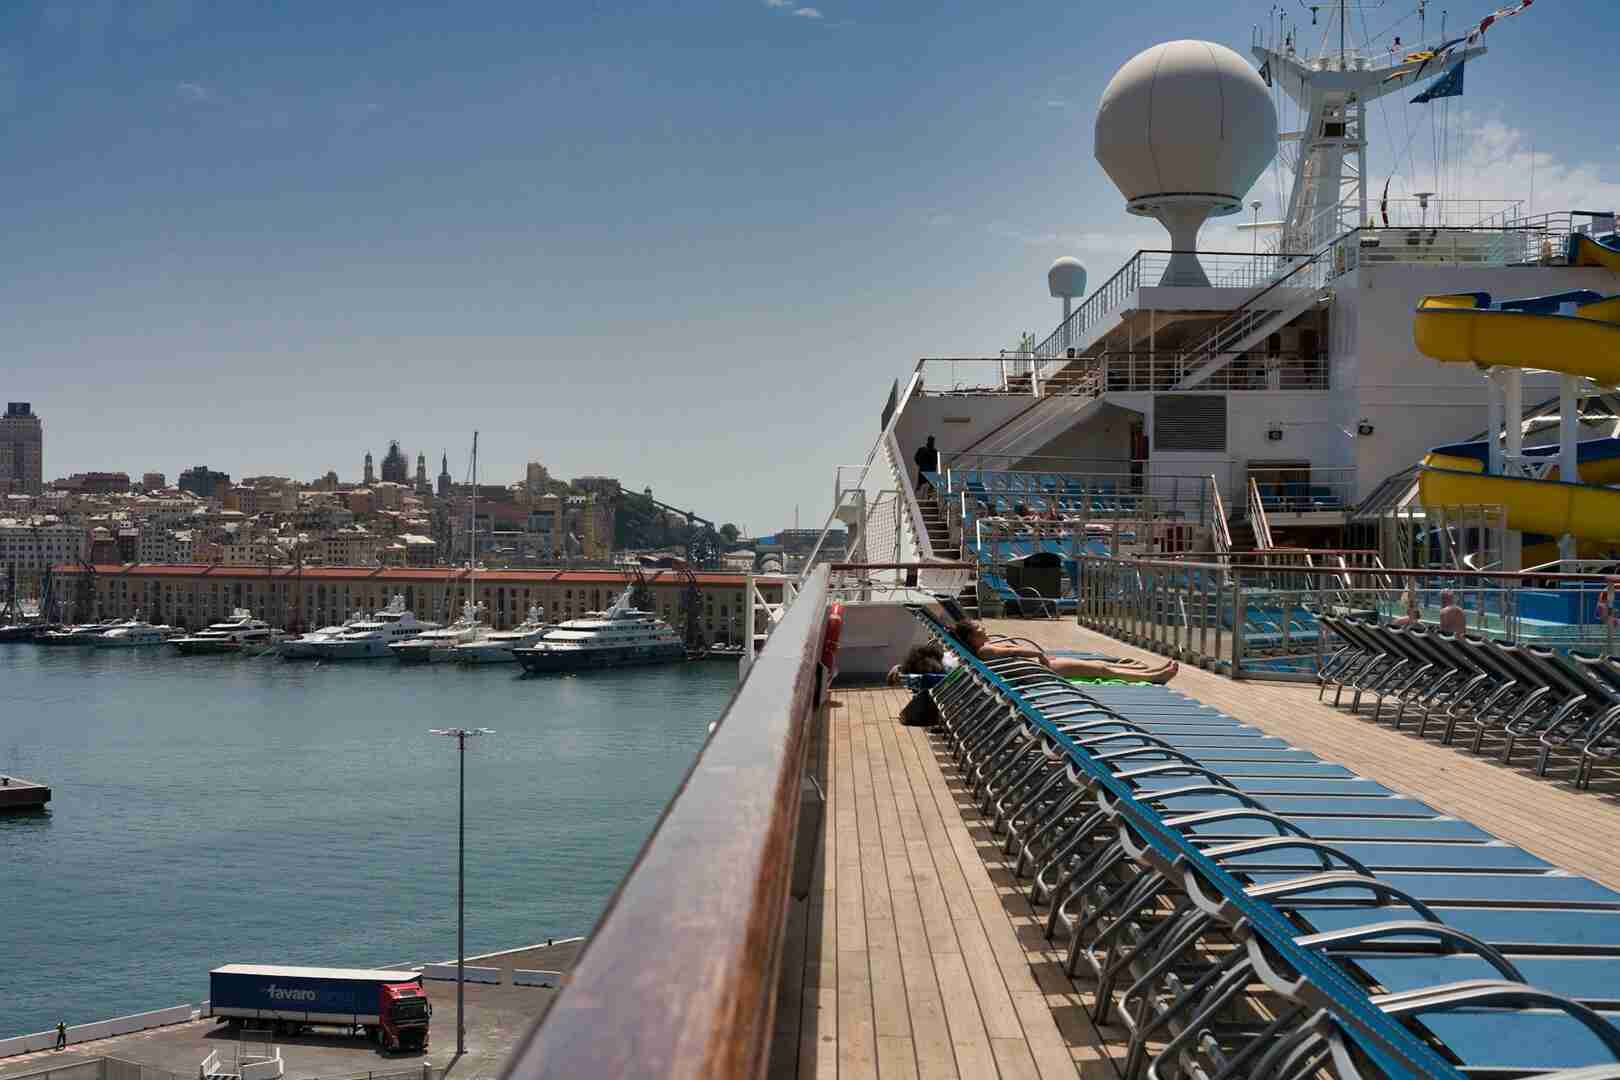 Porto di Genova: in arrivo una nuova banchina per le maxi crociere